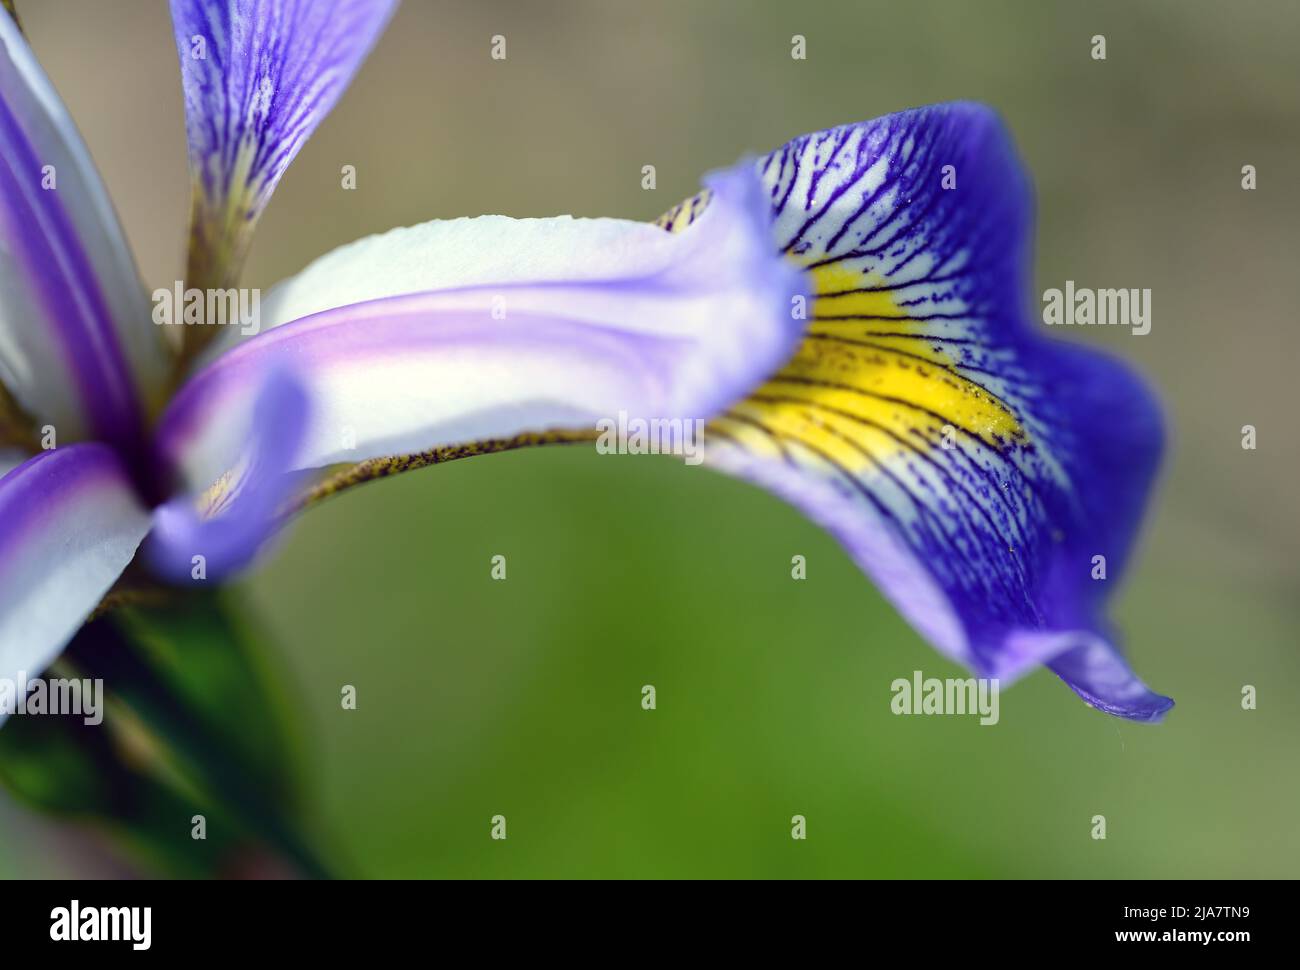 Iris mit violetten, weißen und gelben Blütenblättern. Makroaufnahme mit feinen Details des Blütenblattes. Bunte Irisblume in Kent, Großbritannien gesehen. Stockfoto